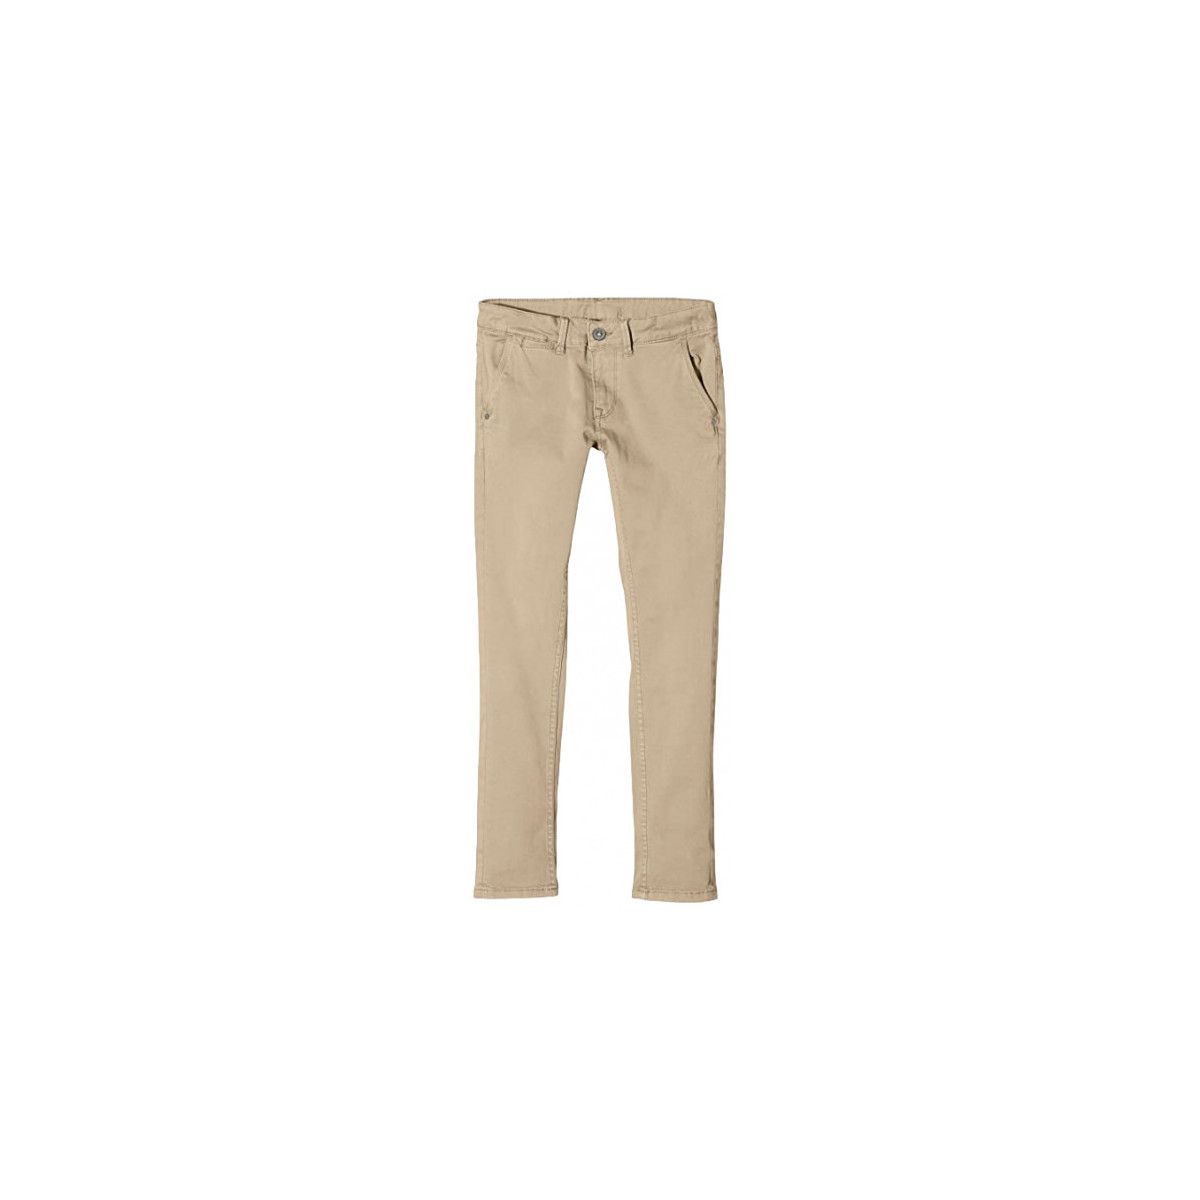 Vêtements Enfant Pantalons Pepe jeans Chino junior  beige BLUEBURNS17 - 10 ANS Beige